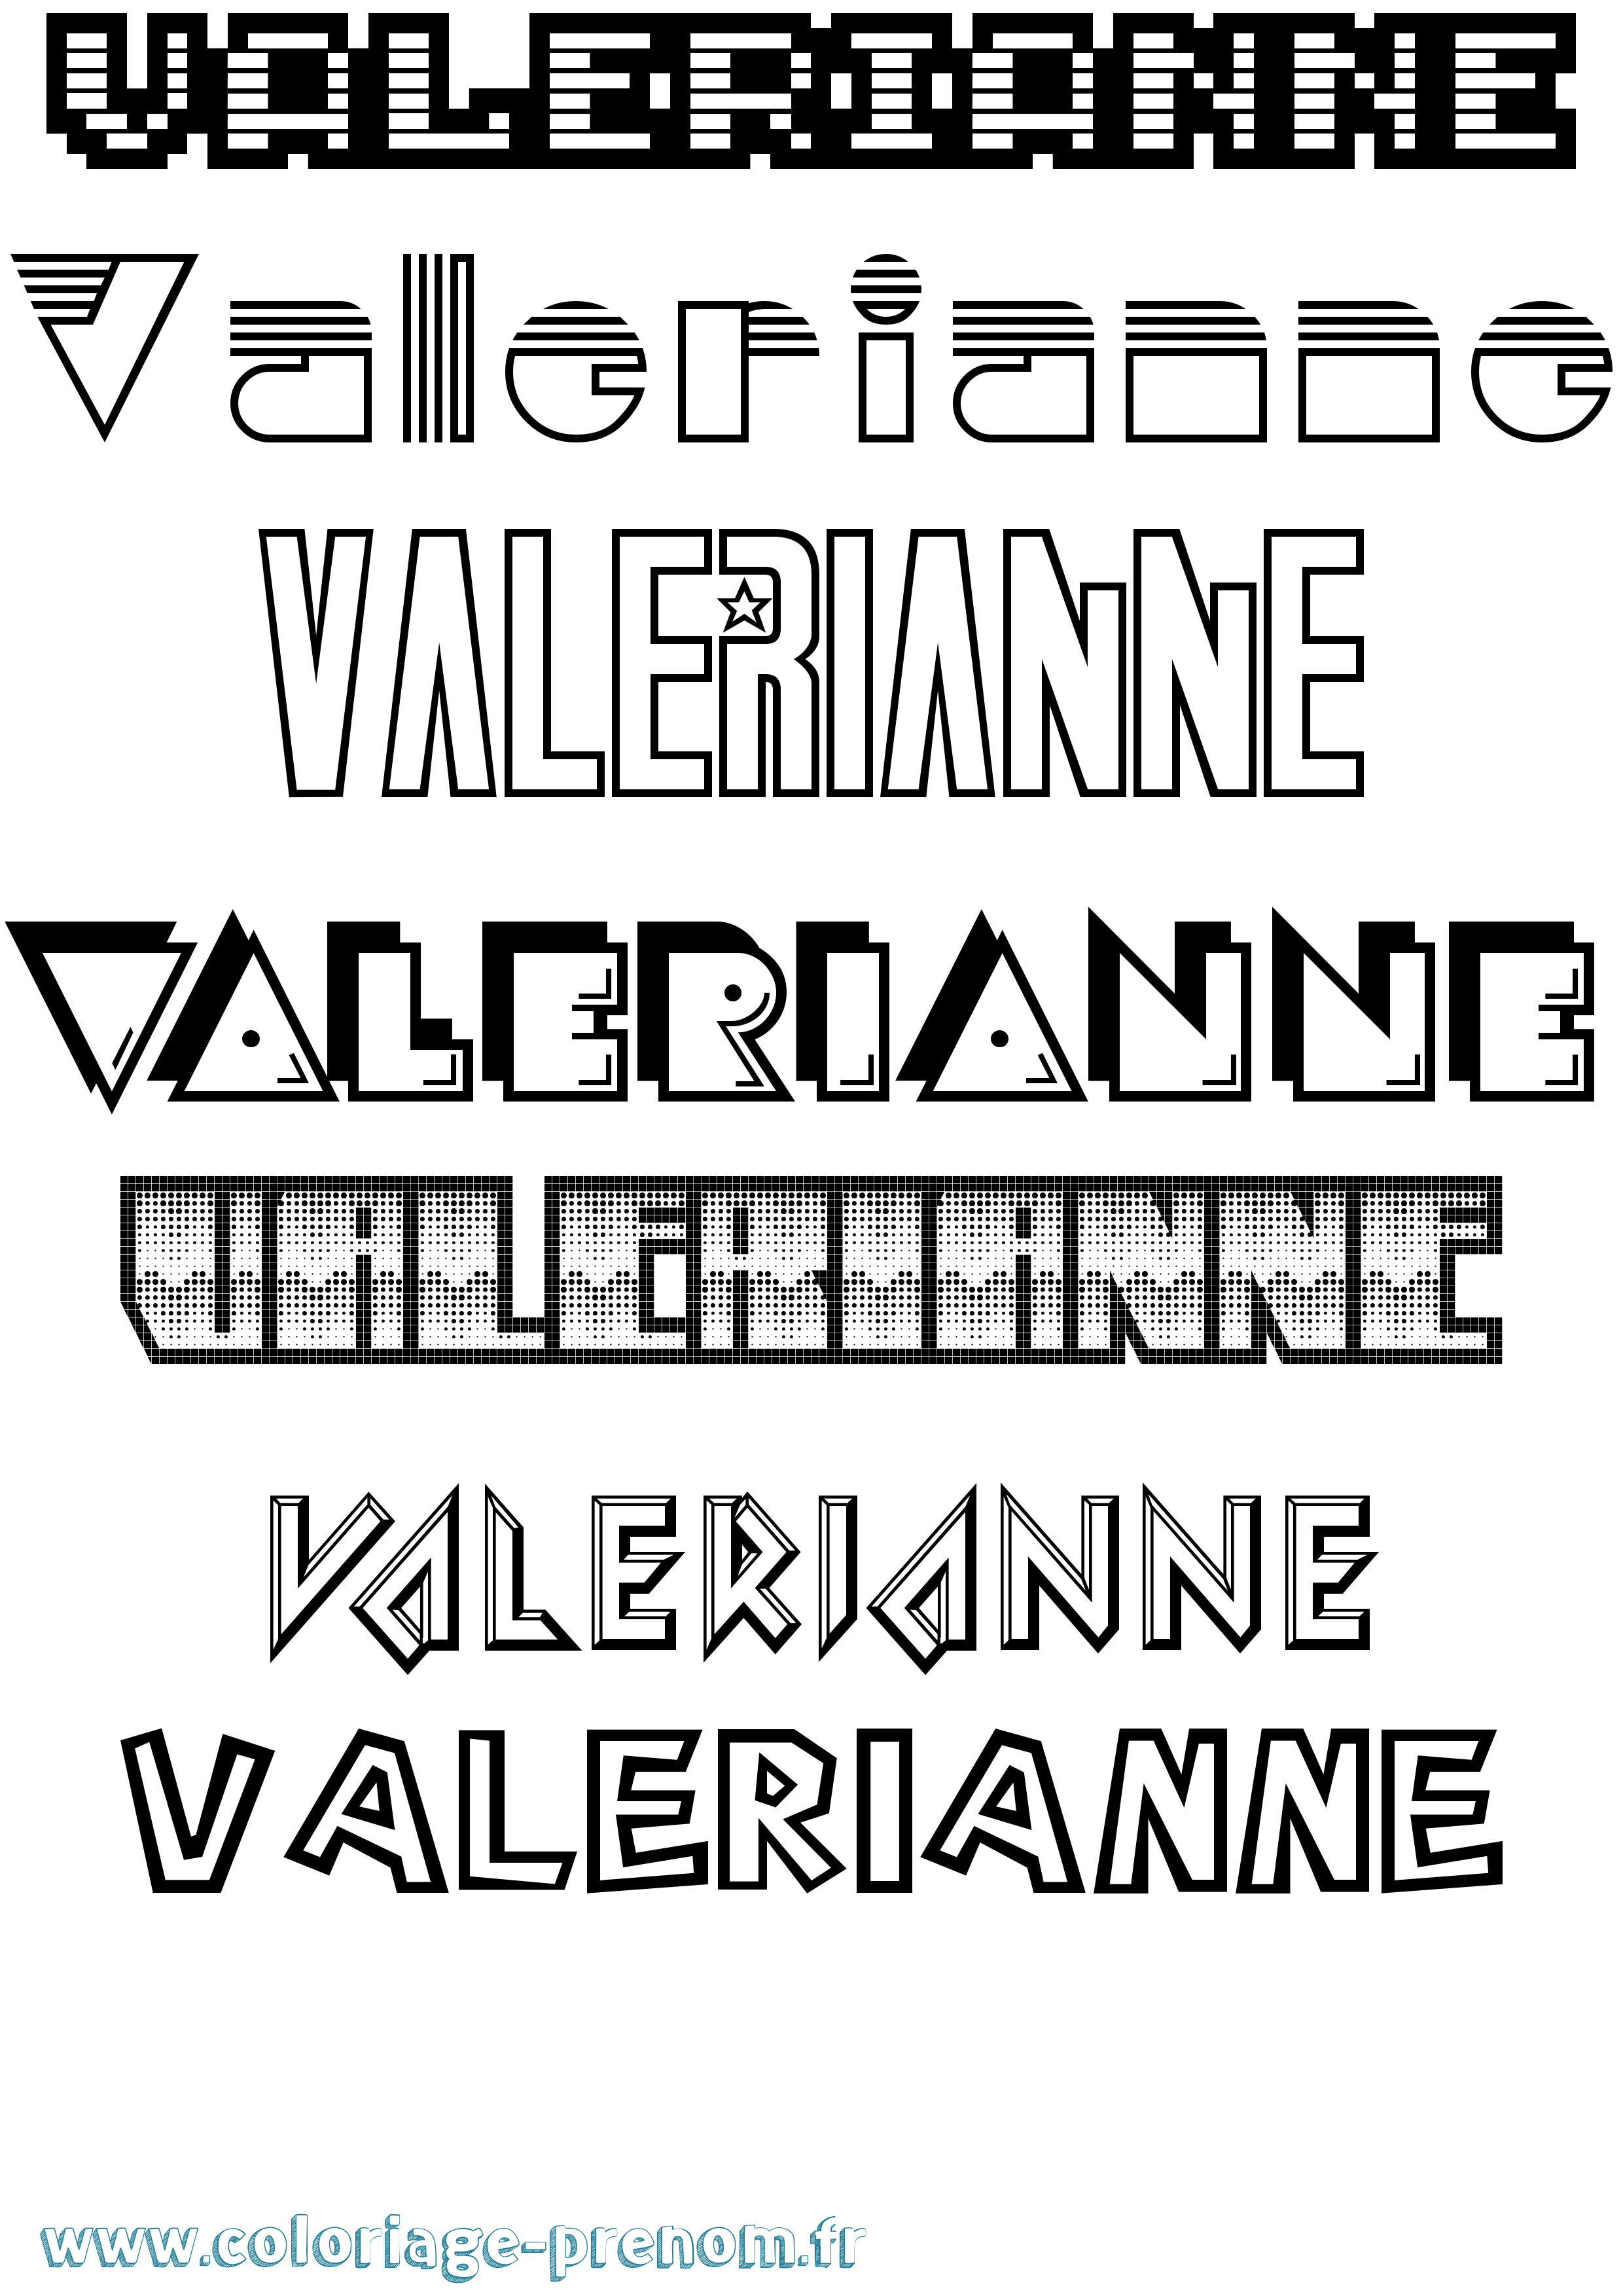 Coloriage prénom Valerianne Jeux Vidéos